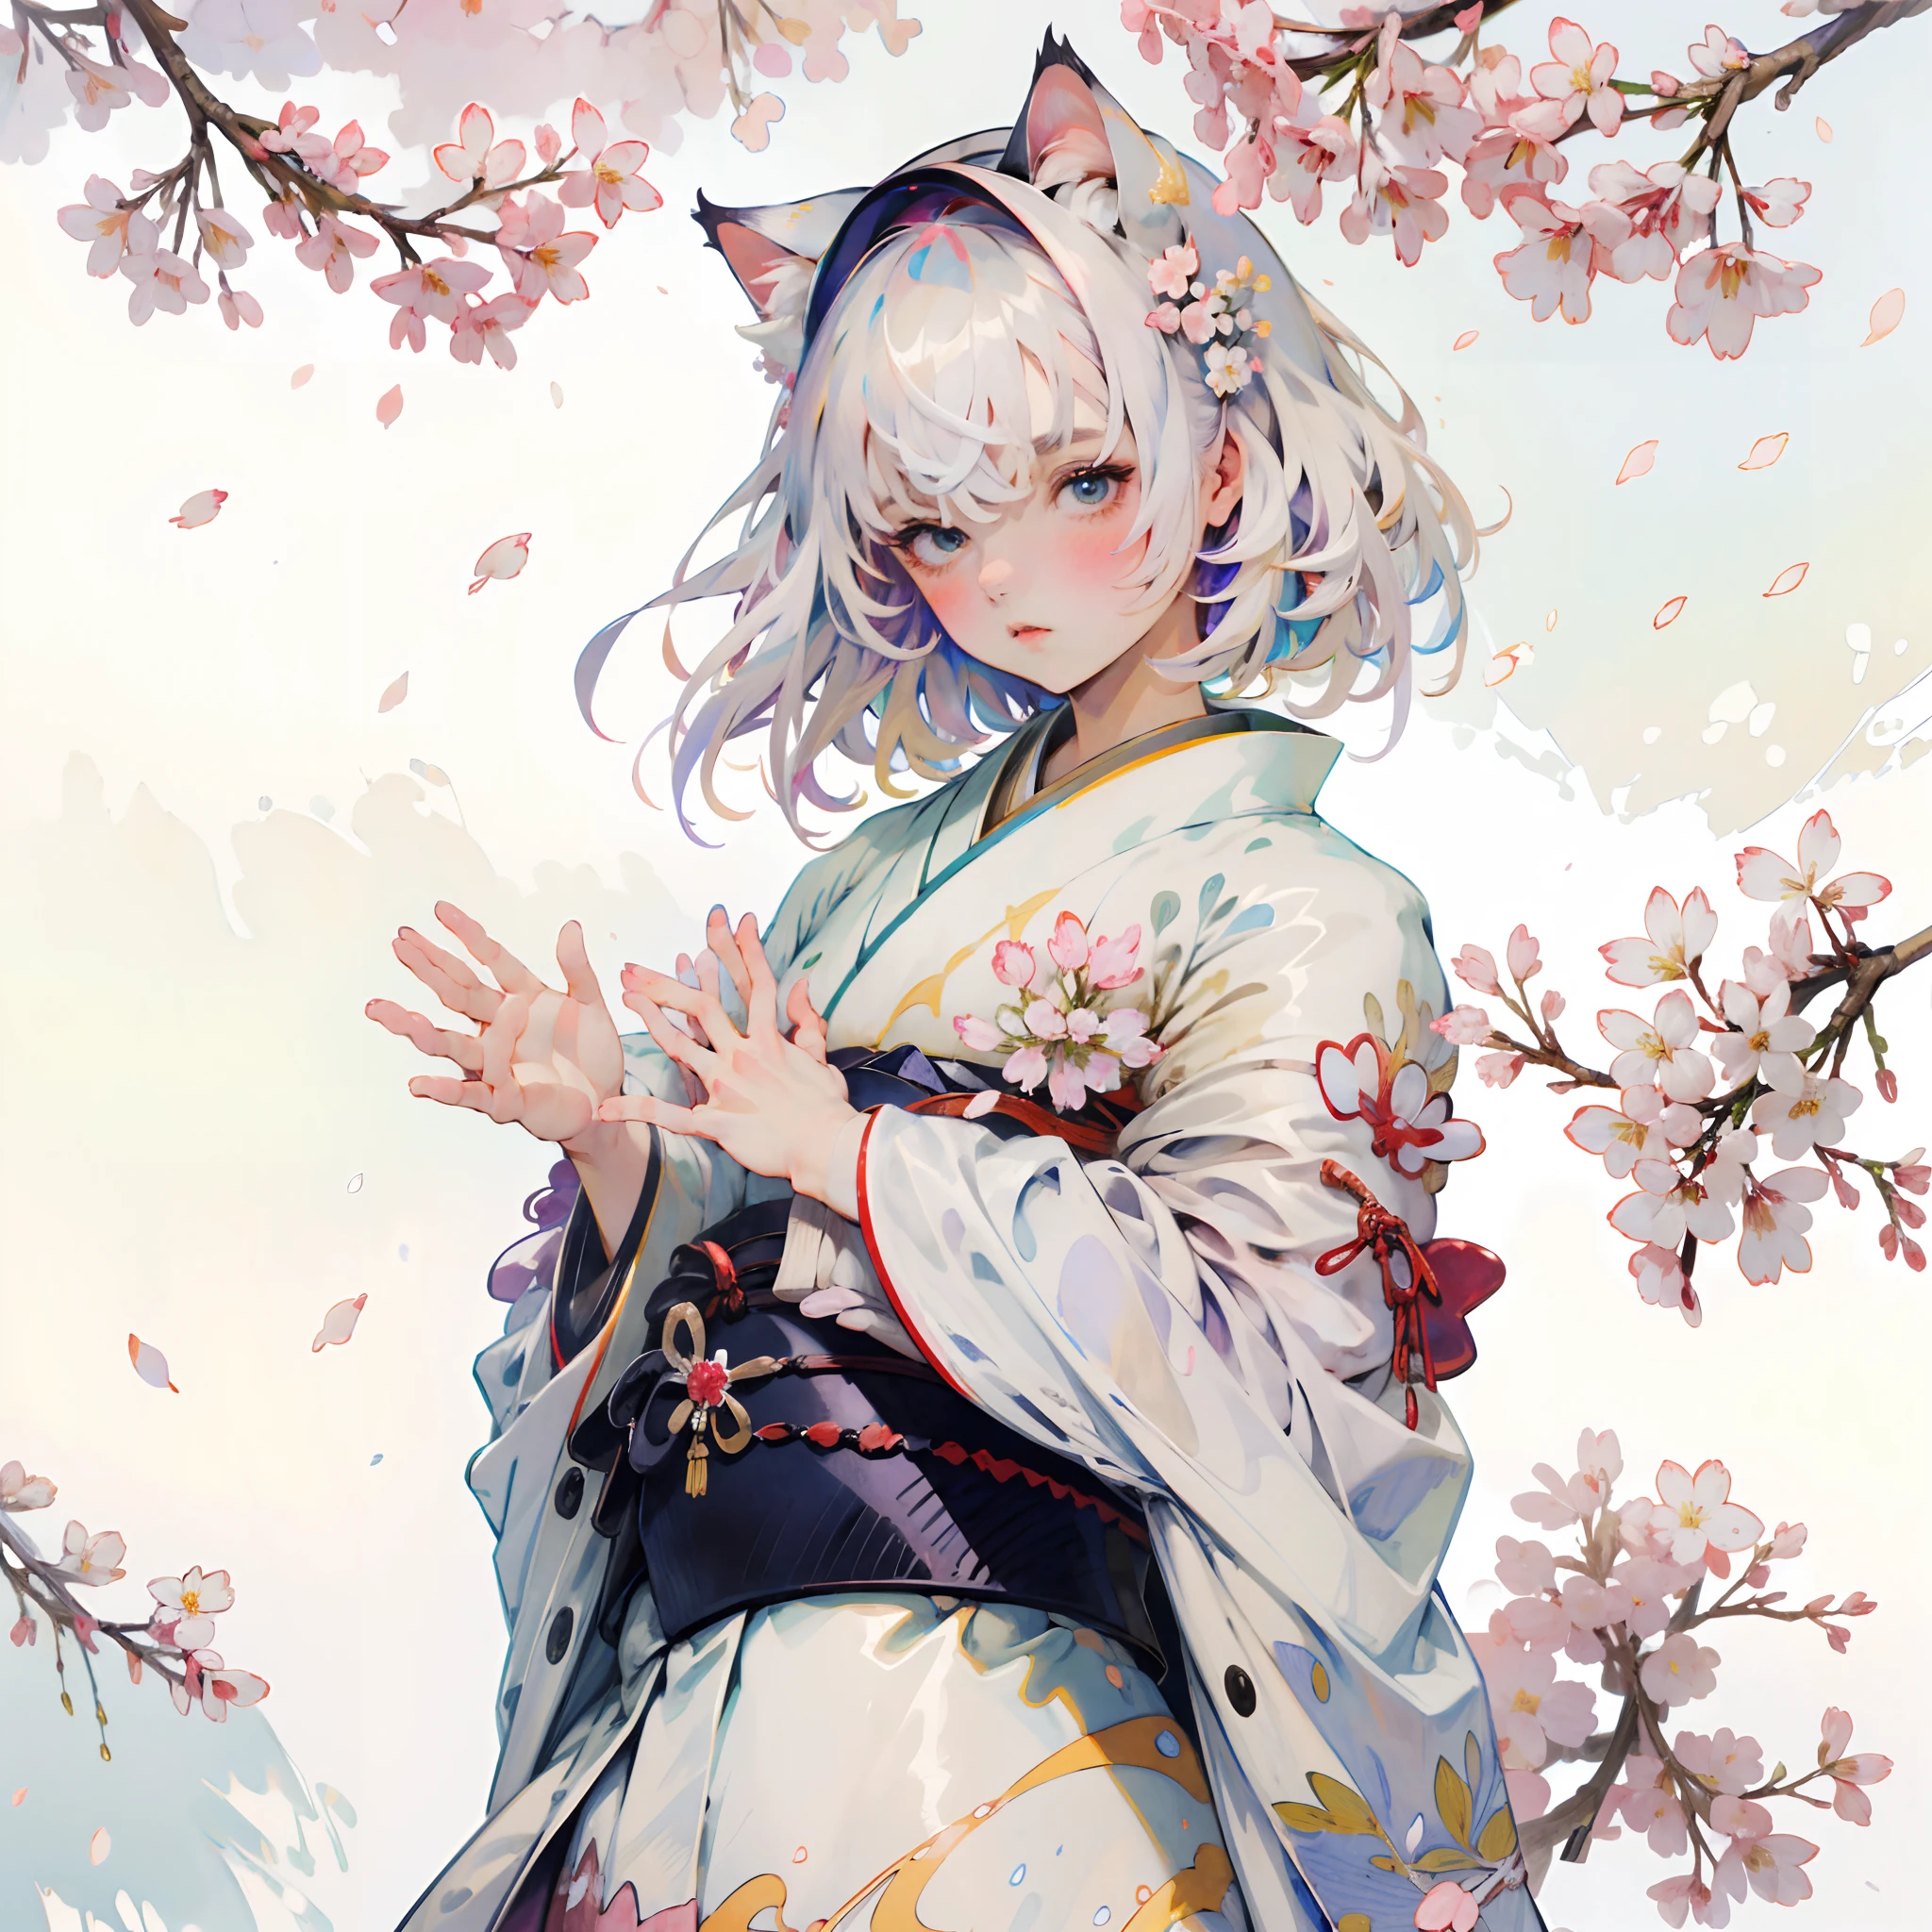 (8k Hintergrund:1.2),(ultrahohe Auflösung:1.2),(Meisterwerk:1.1),Hintergrund,gute Qualität,Meisterwerk,(Hohe Detailliertheit),1 Mädchen, trägt einen weißen Kimono mit Sakura-Blütenblättern , umgeben von Blütenblättern, weißes Haar,Katzenohren, Schön, perfekte Hände